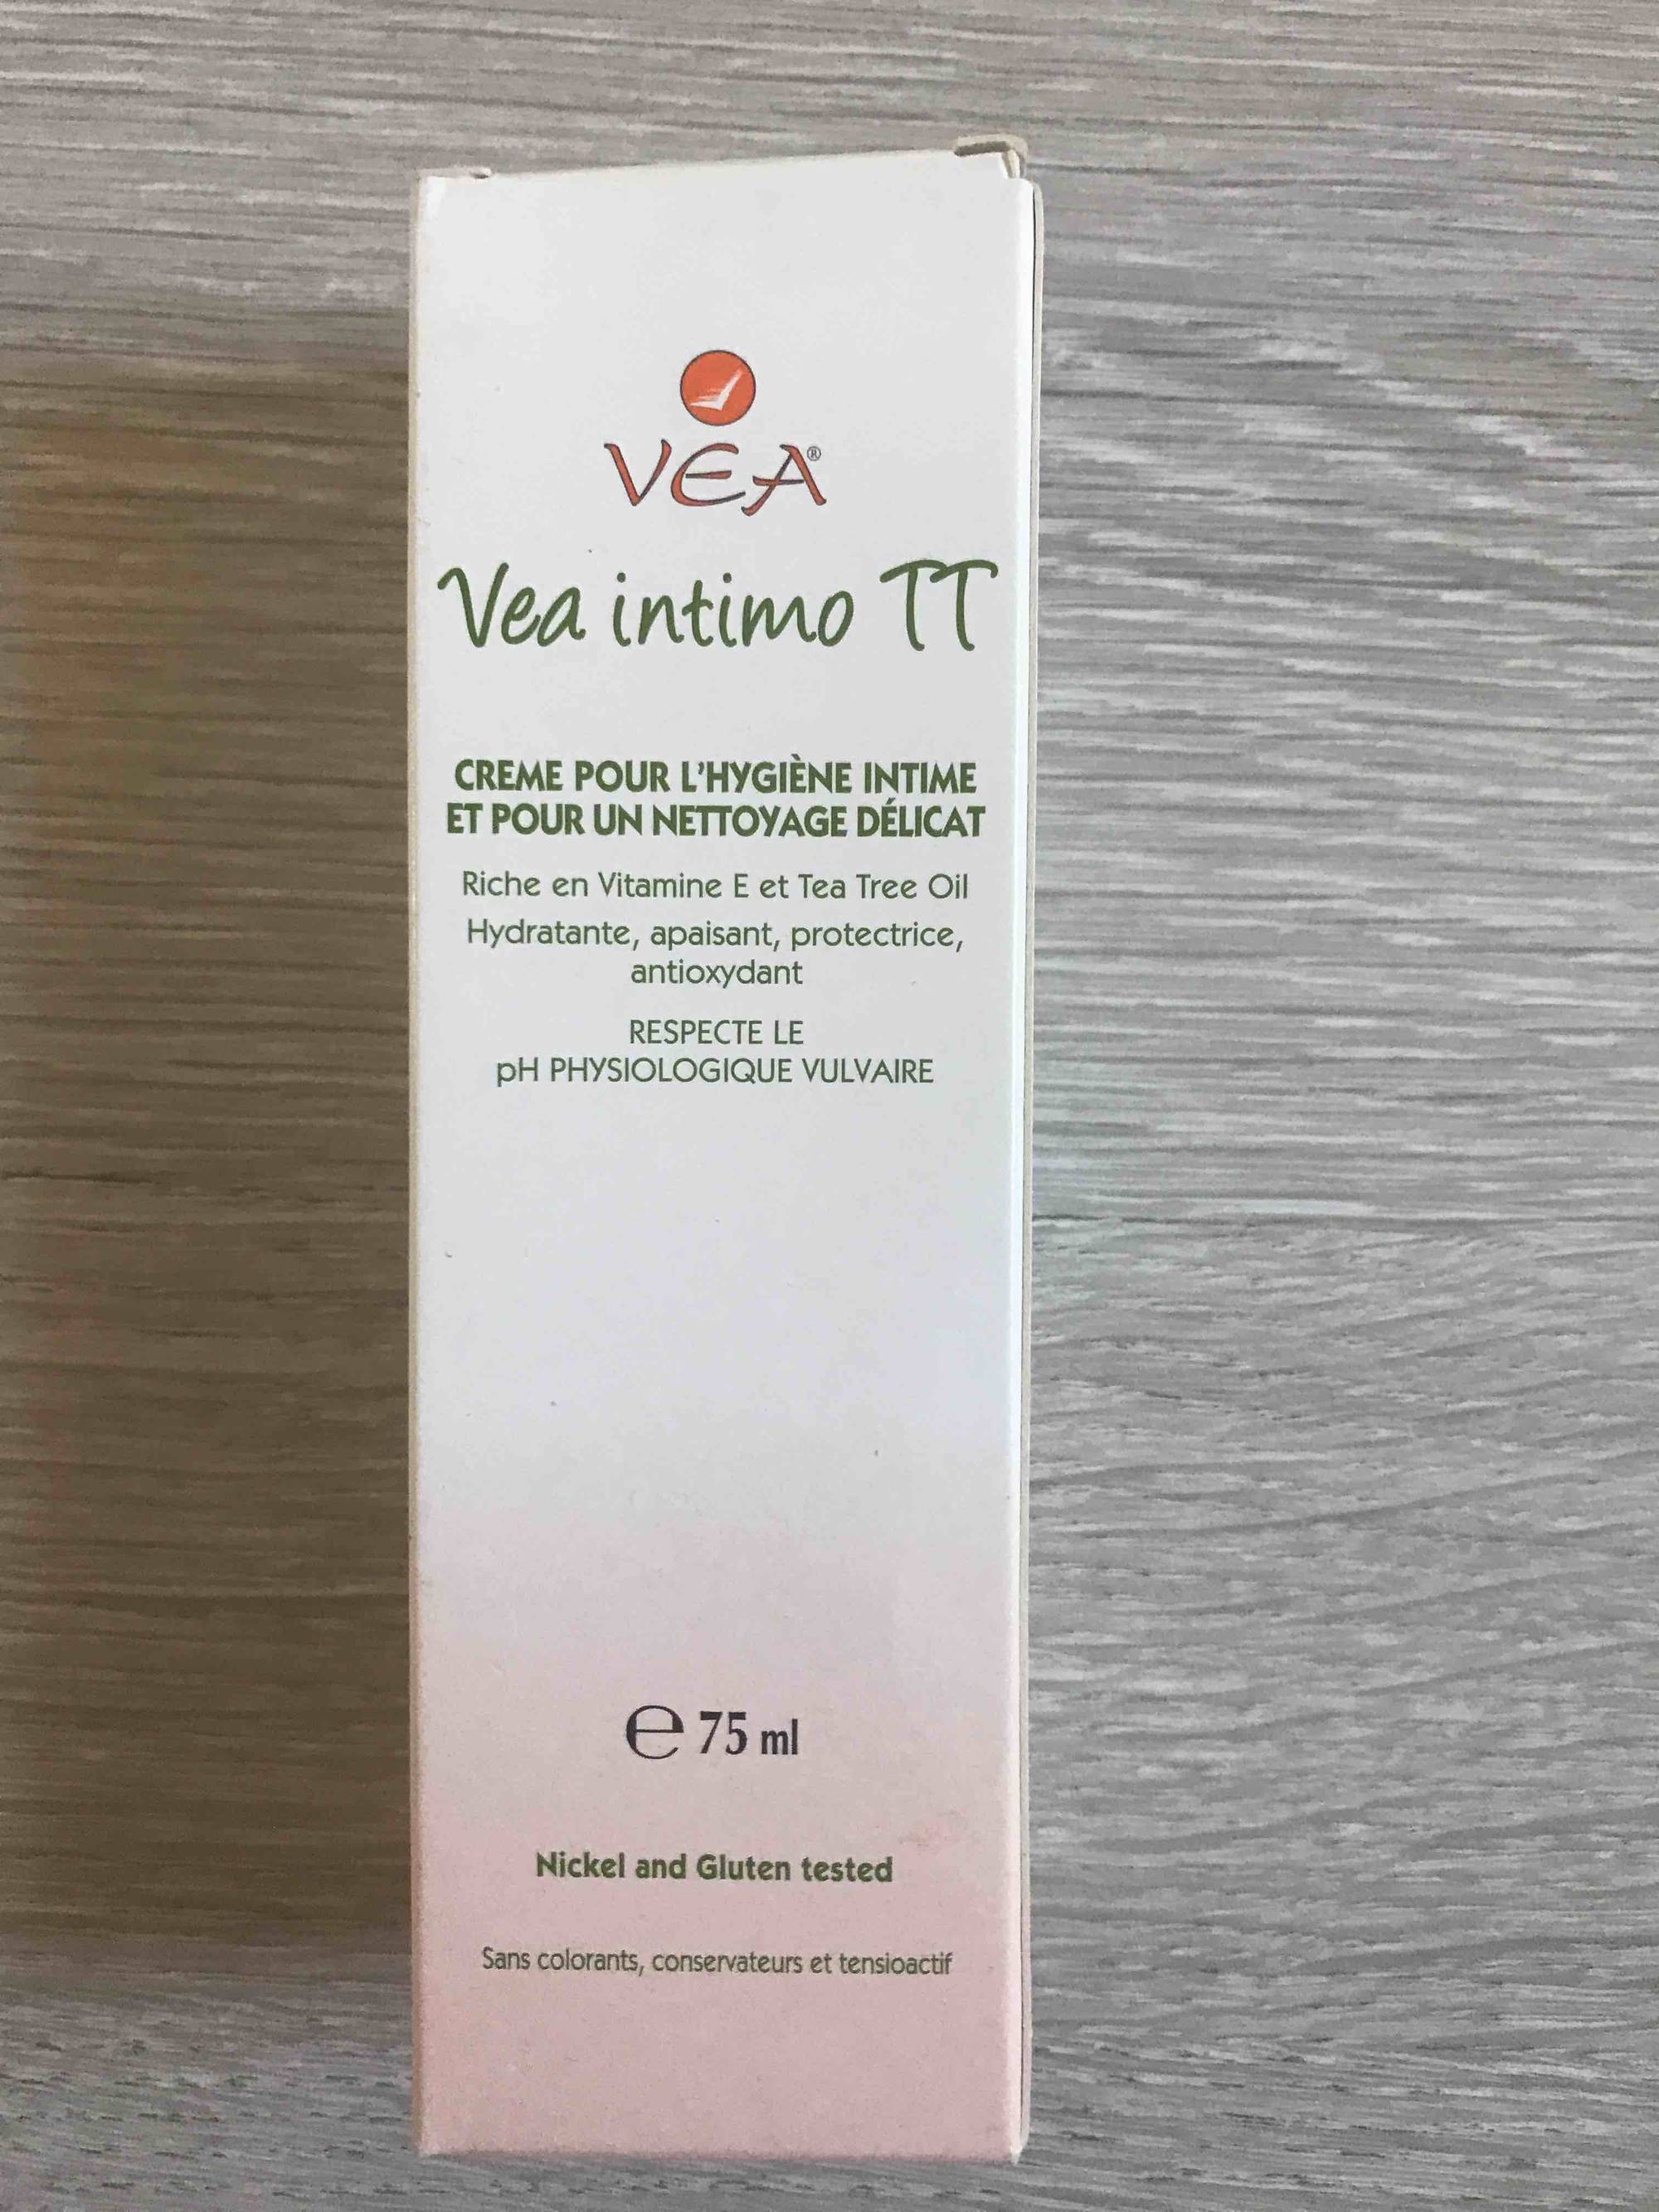 VEA - Intimo Tt - Crème pour l'hygiène intime